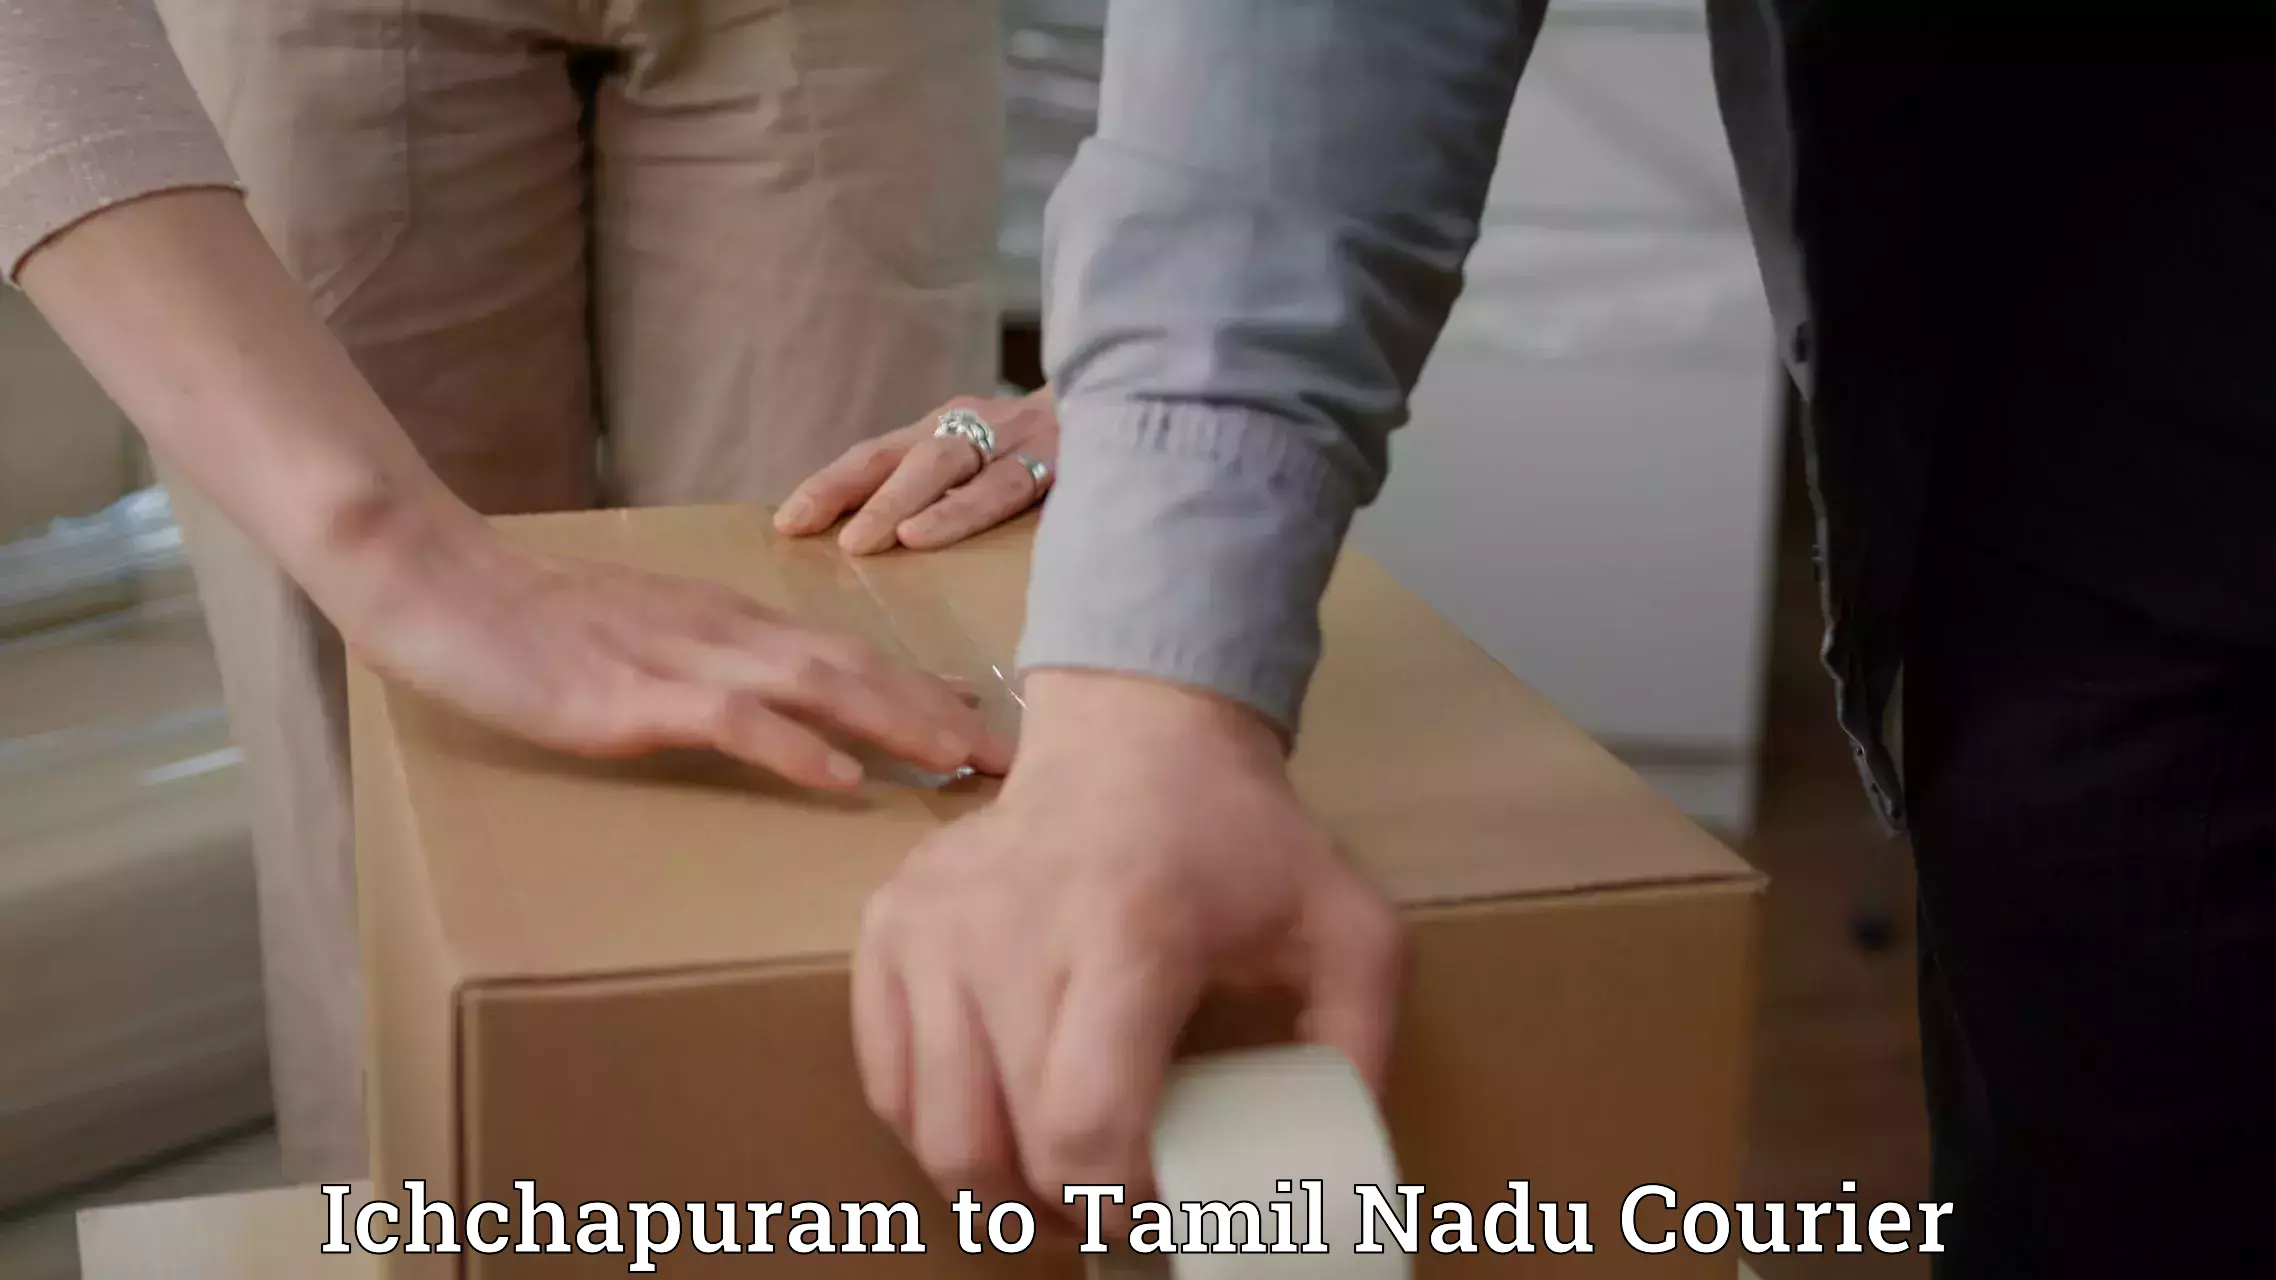 Diverse delivery methods in Ichchapuram to Palladam